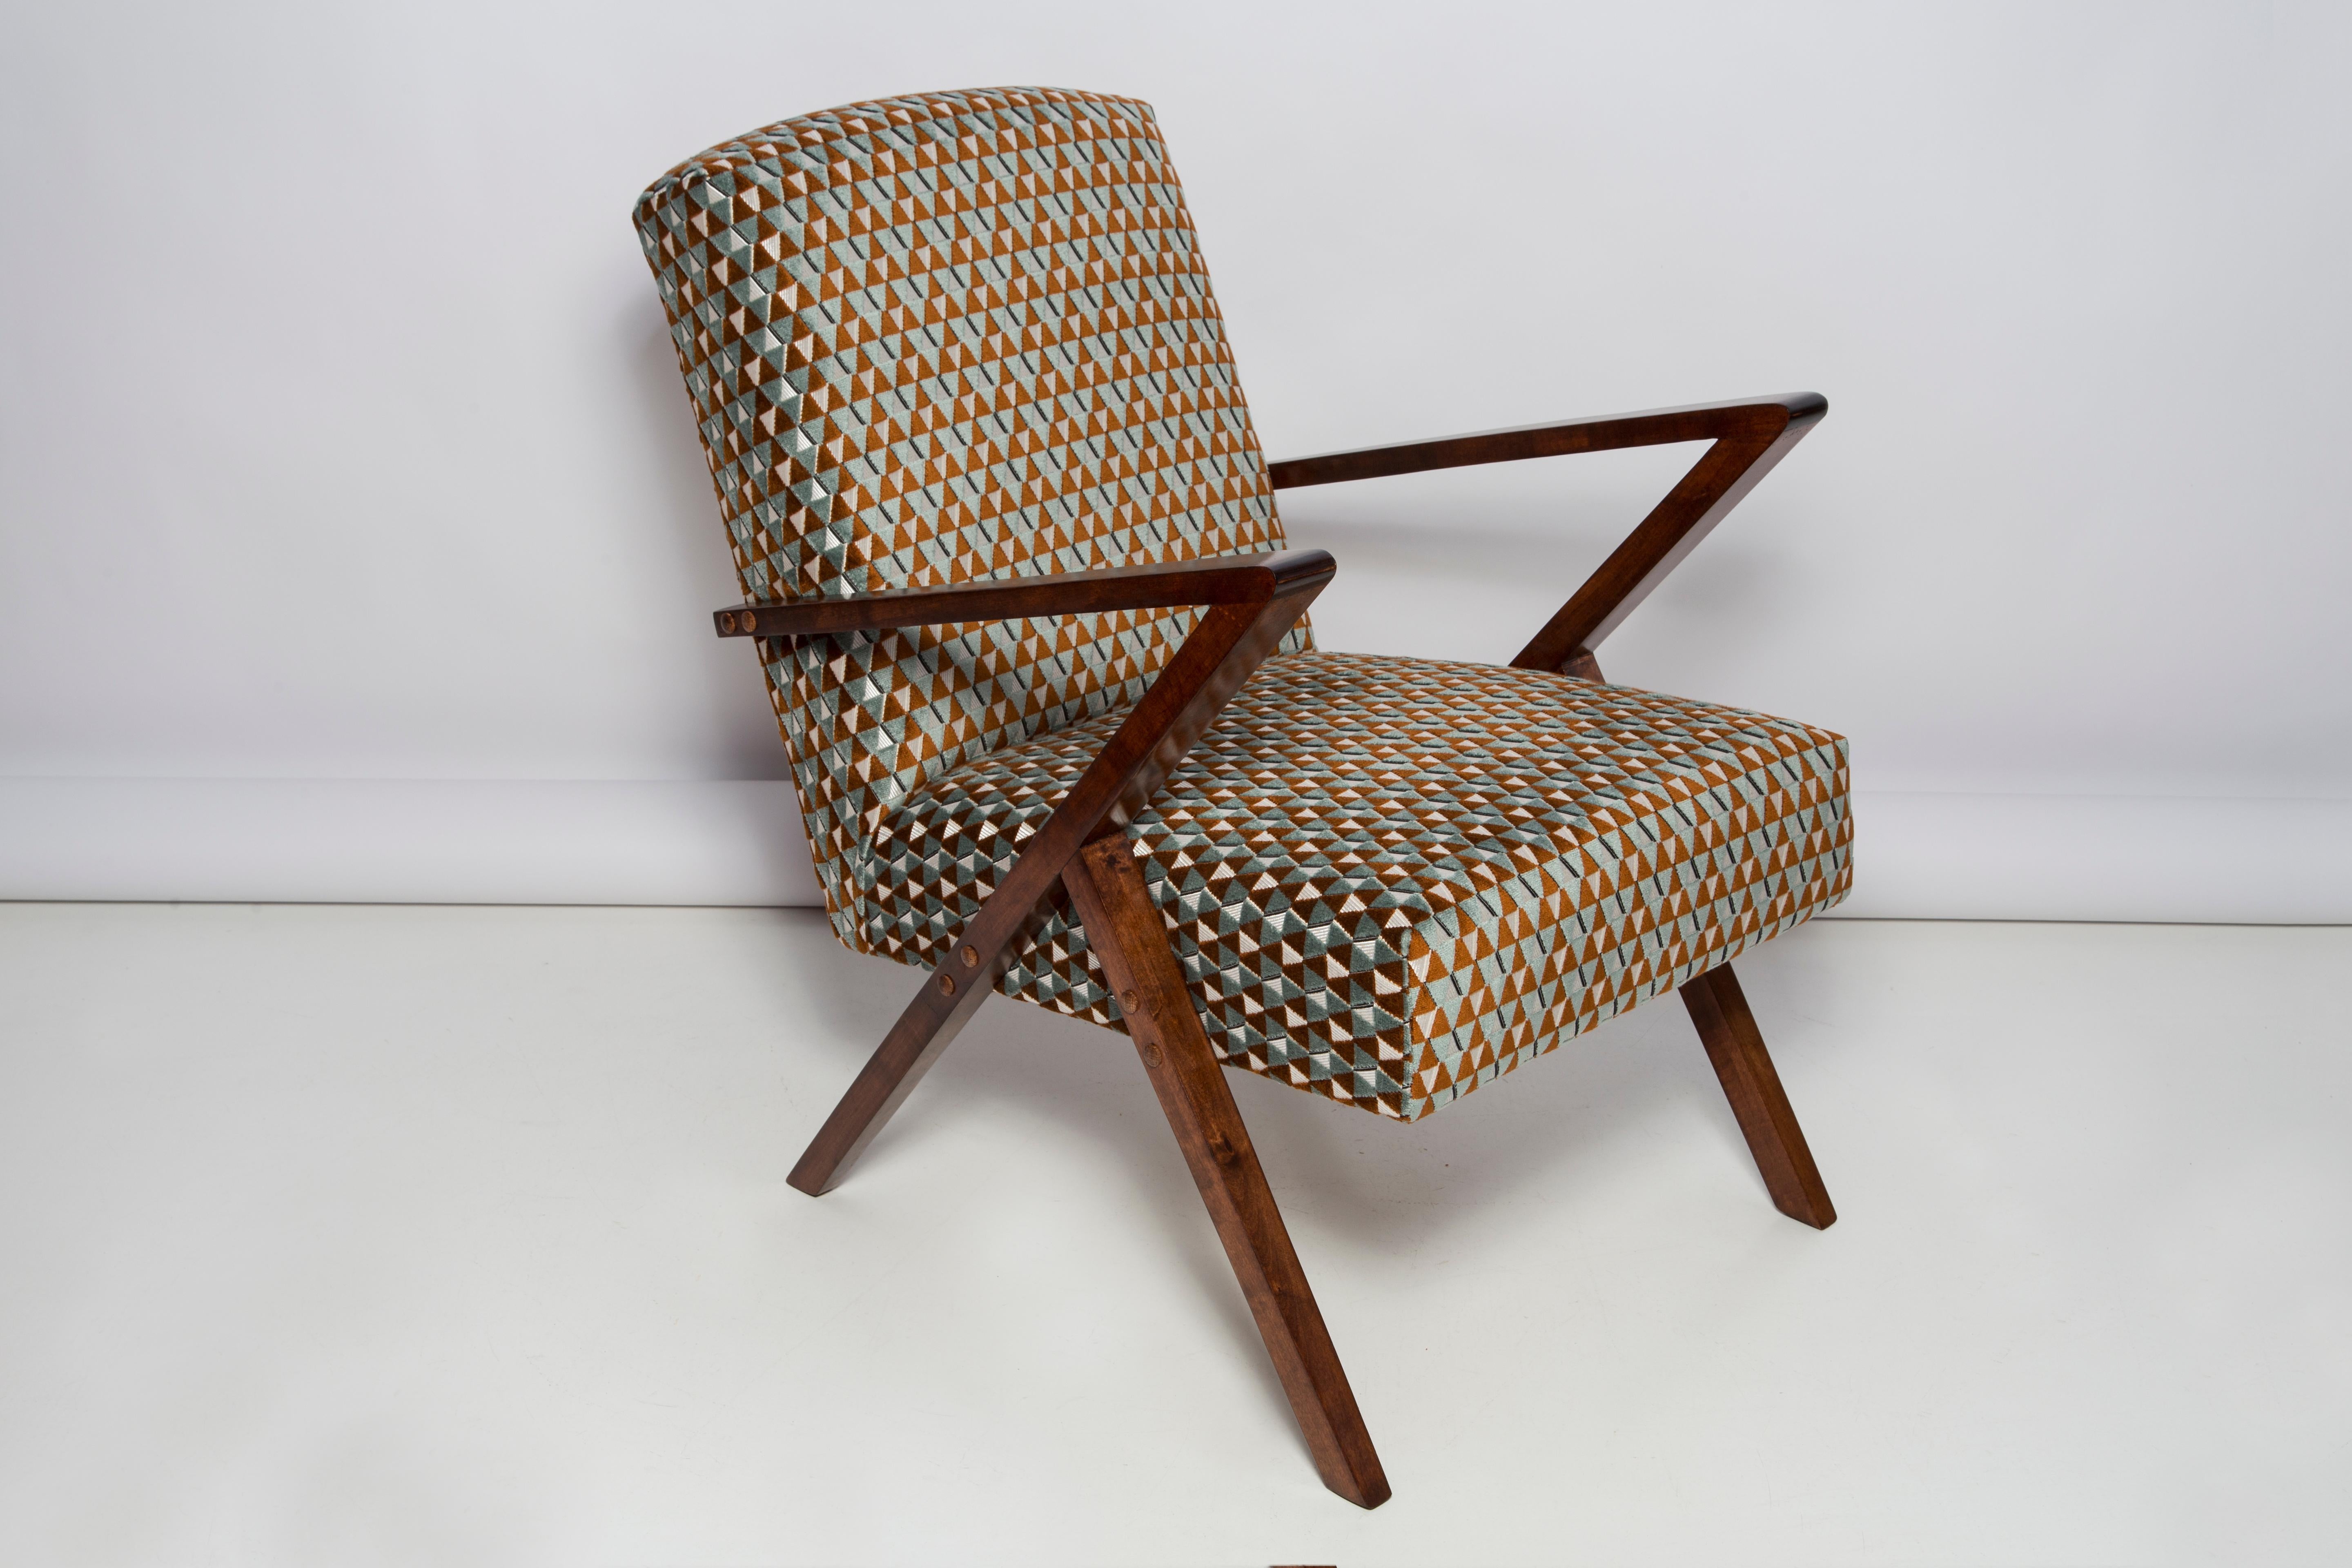 Sessel, hergestellt in der Genossenschaft für die Erneuerung von Bydgoszcz in den 1970er Jahren. Die Sessel sind nach einer umfassenden Renovierung von Tischlerarbeiten und Polsterung. Das Holz wurde gereinigt, die Hohlräume ausgefüllt, mit dunkler